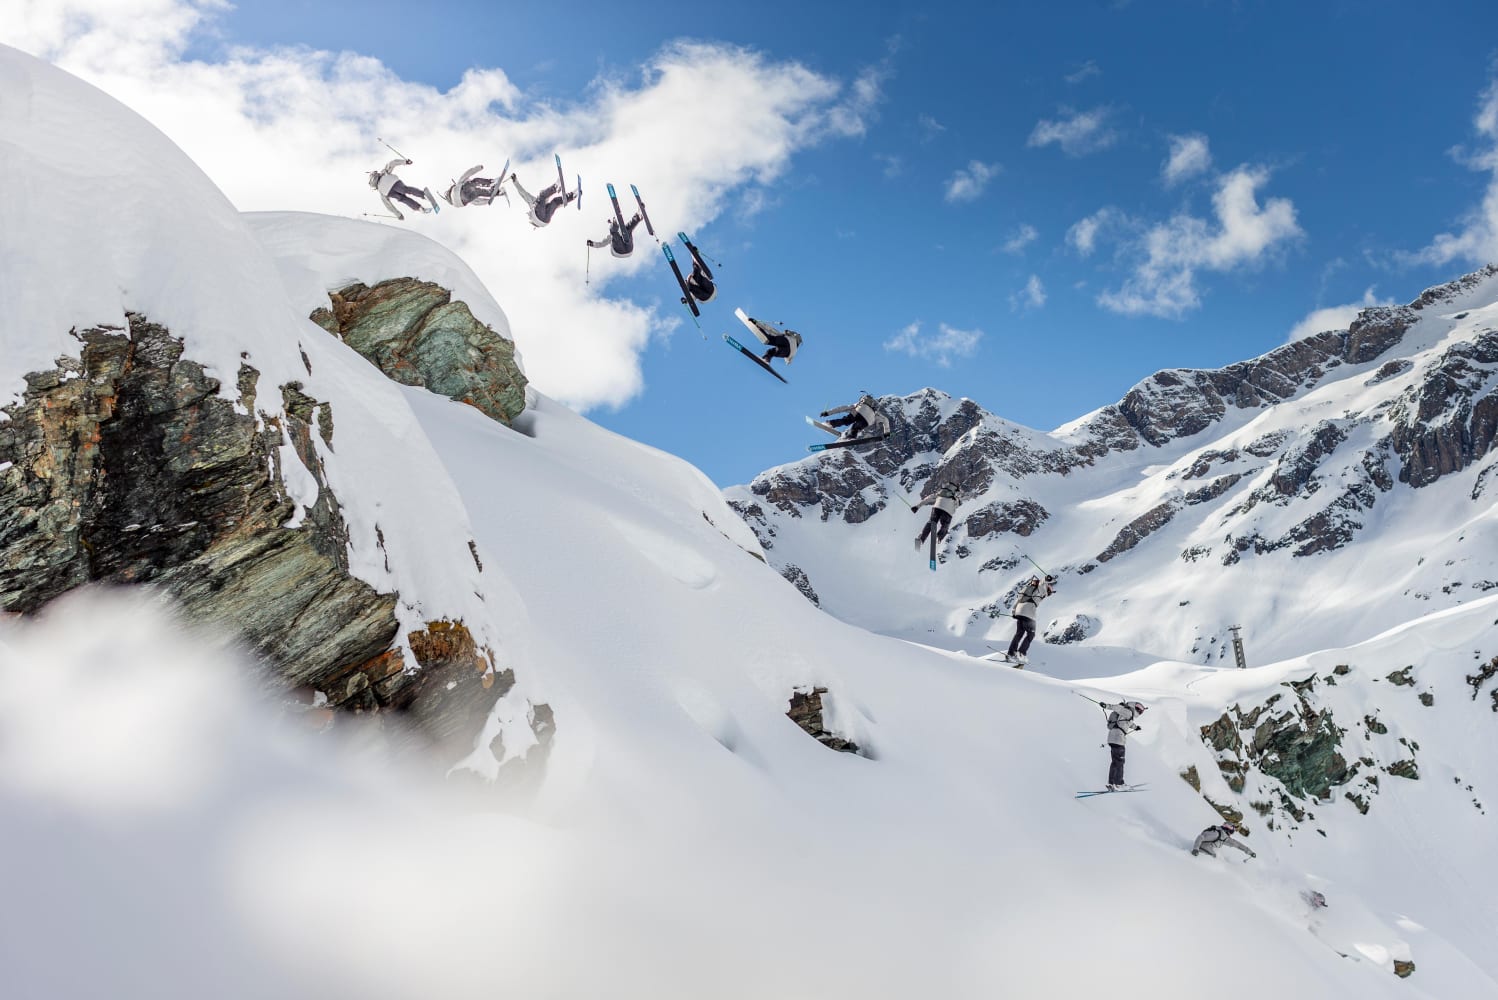 Best ski movies: Top freeski films on Red Bull TV